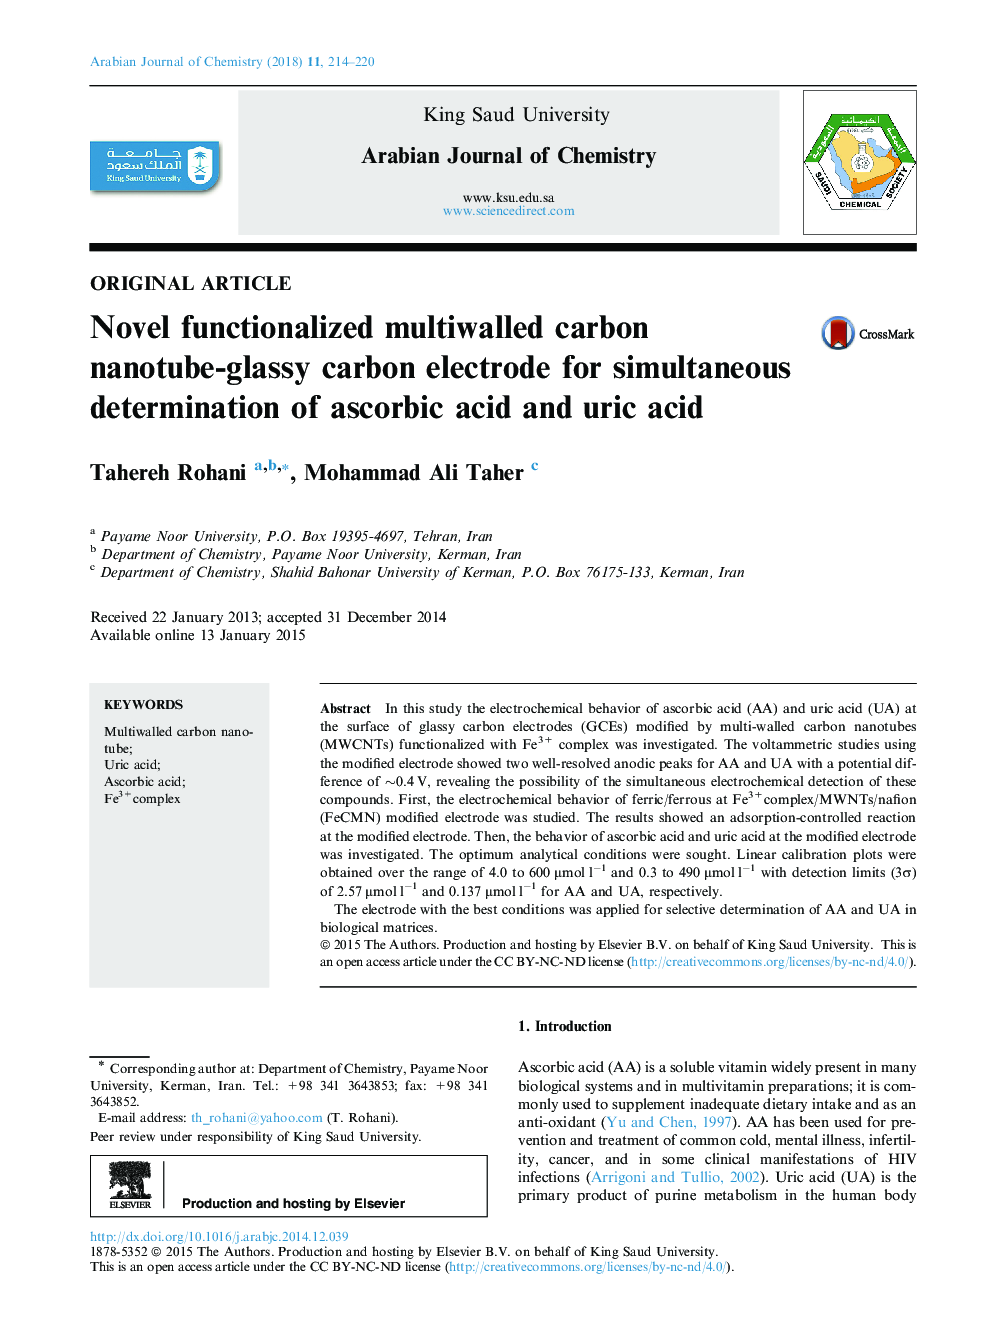 الکترودهای کربنی نانولوله کربنی چند ضلعی کالیبره شده برای تعیین همزمان اسید اسکوربیک و اسید اوریک 